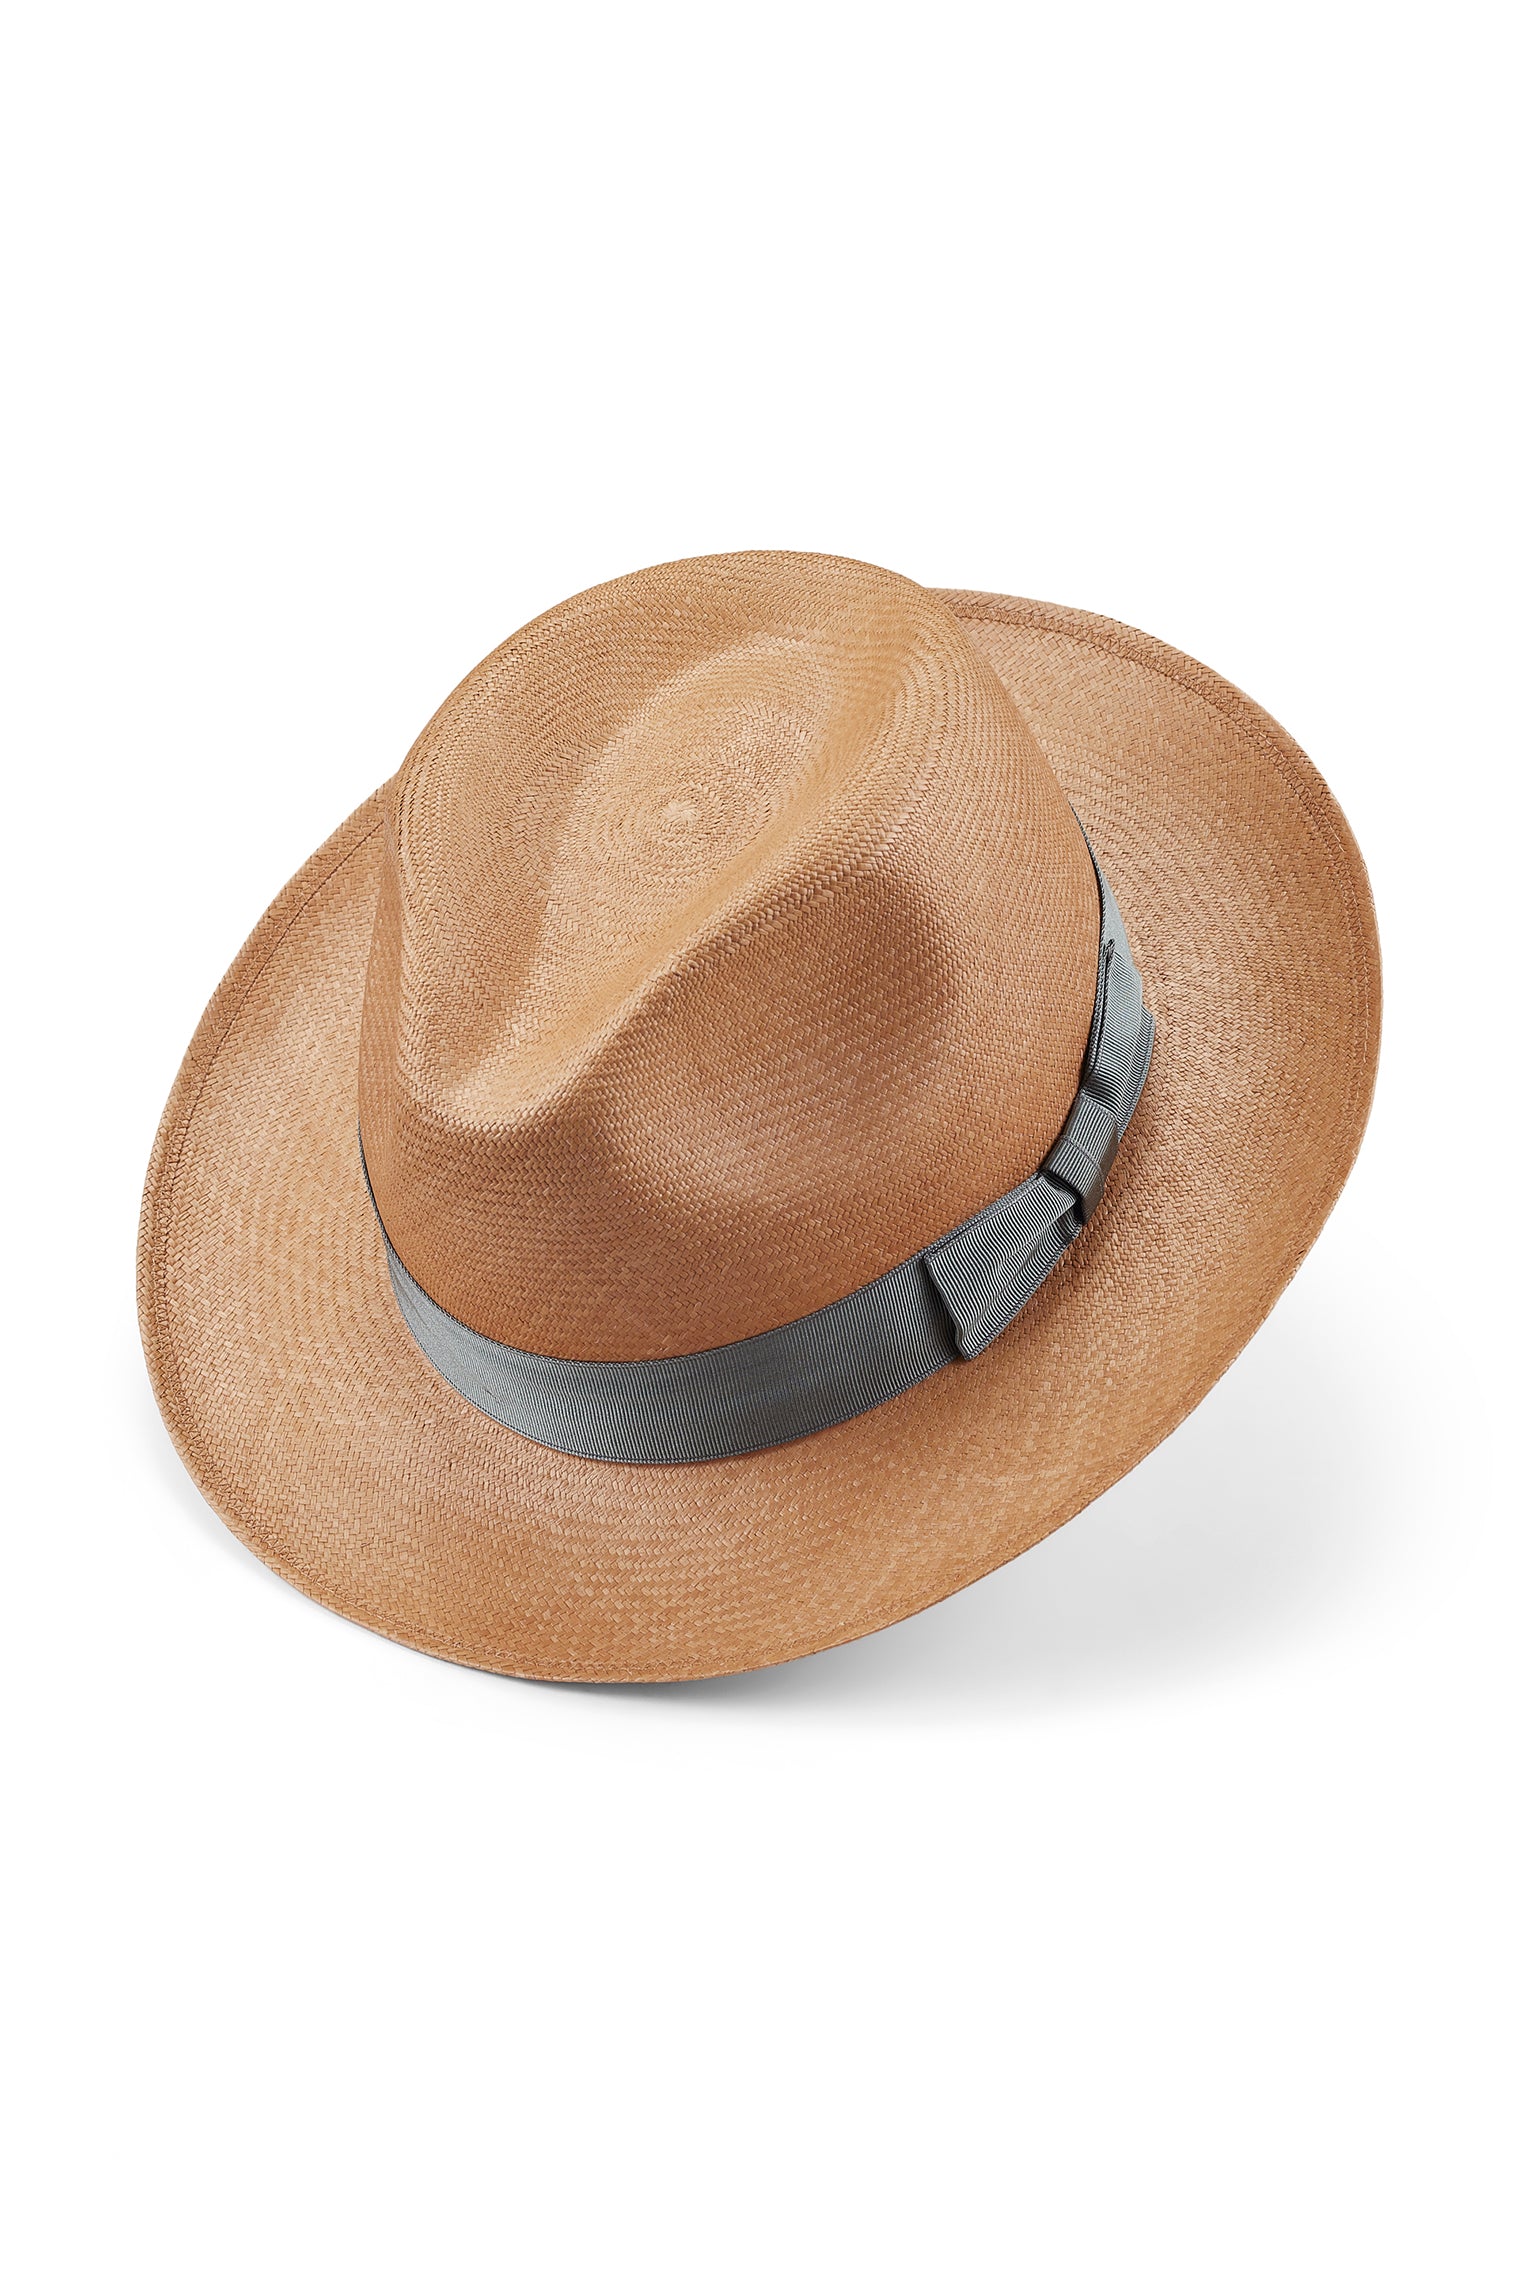 Fairbanks Mocha Panama - Men's Hats - Lock & Co. Hatters London UK